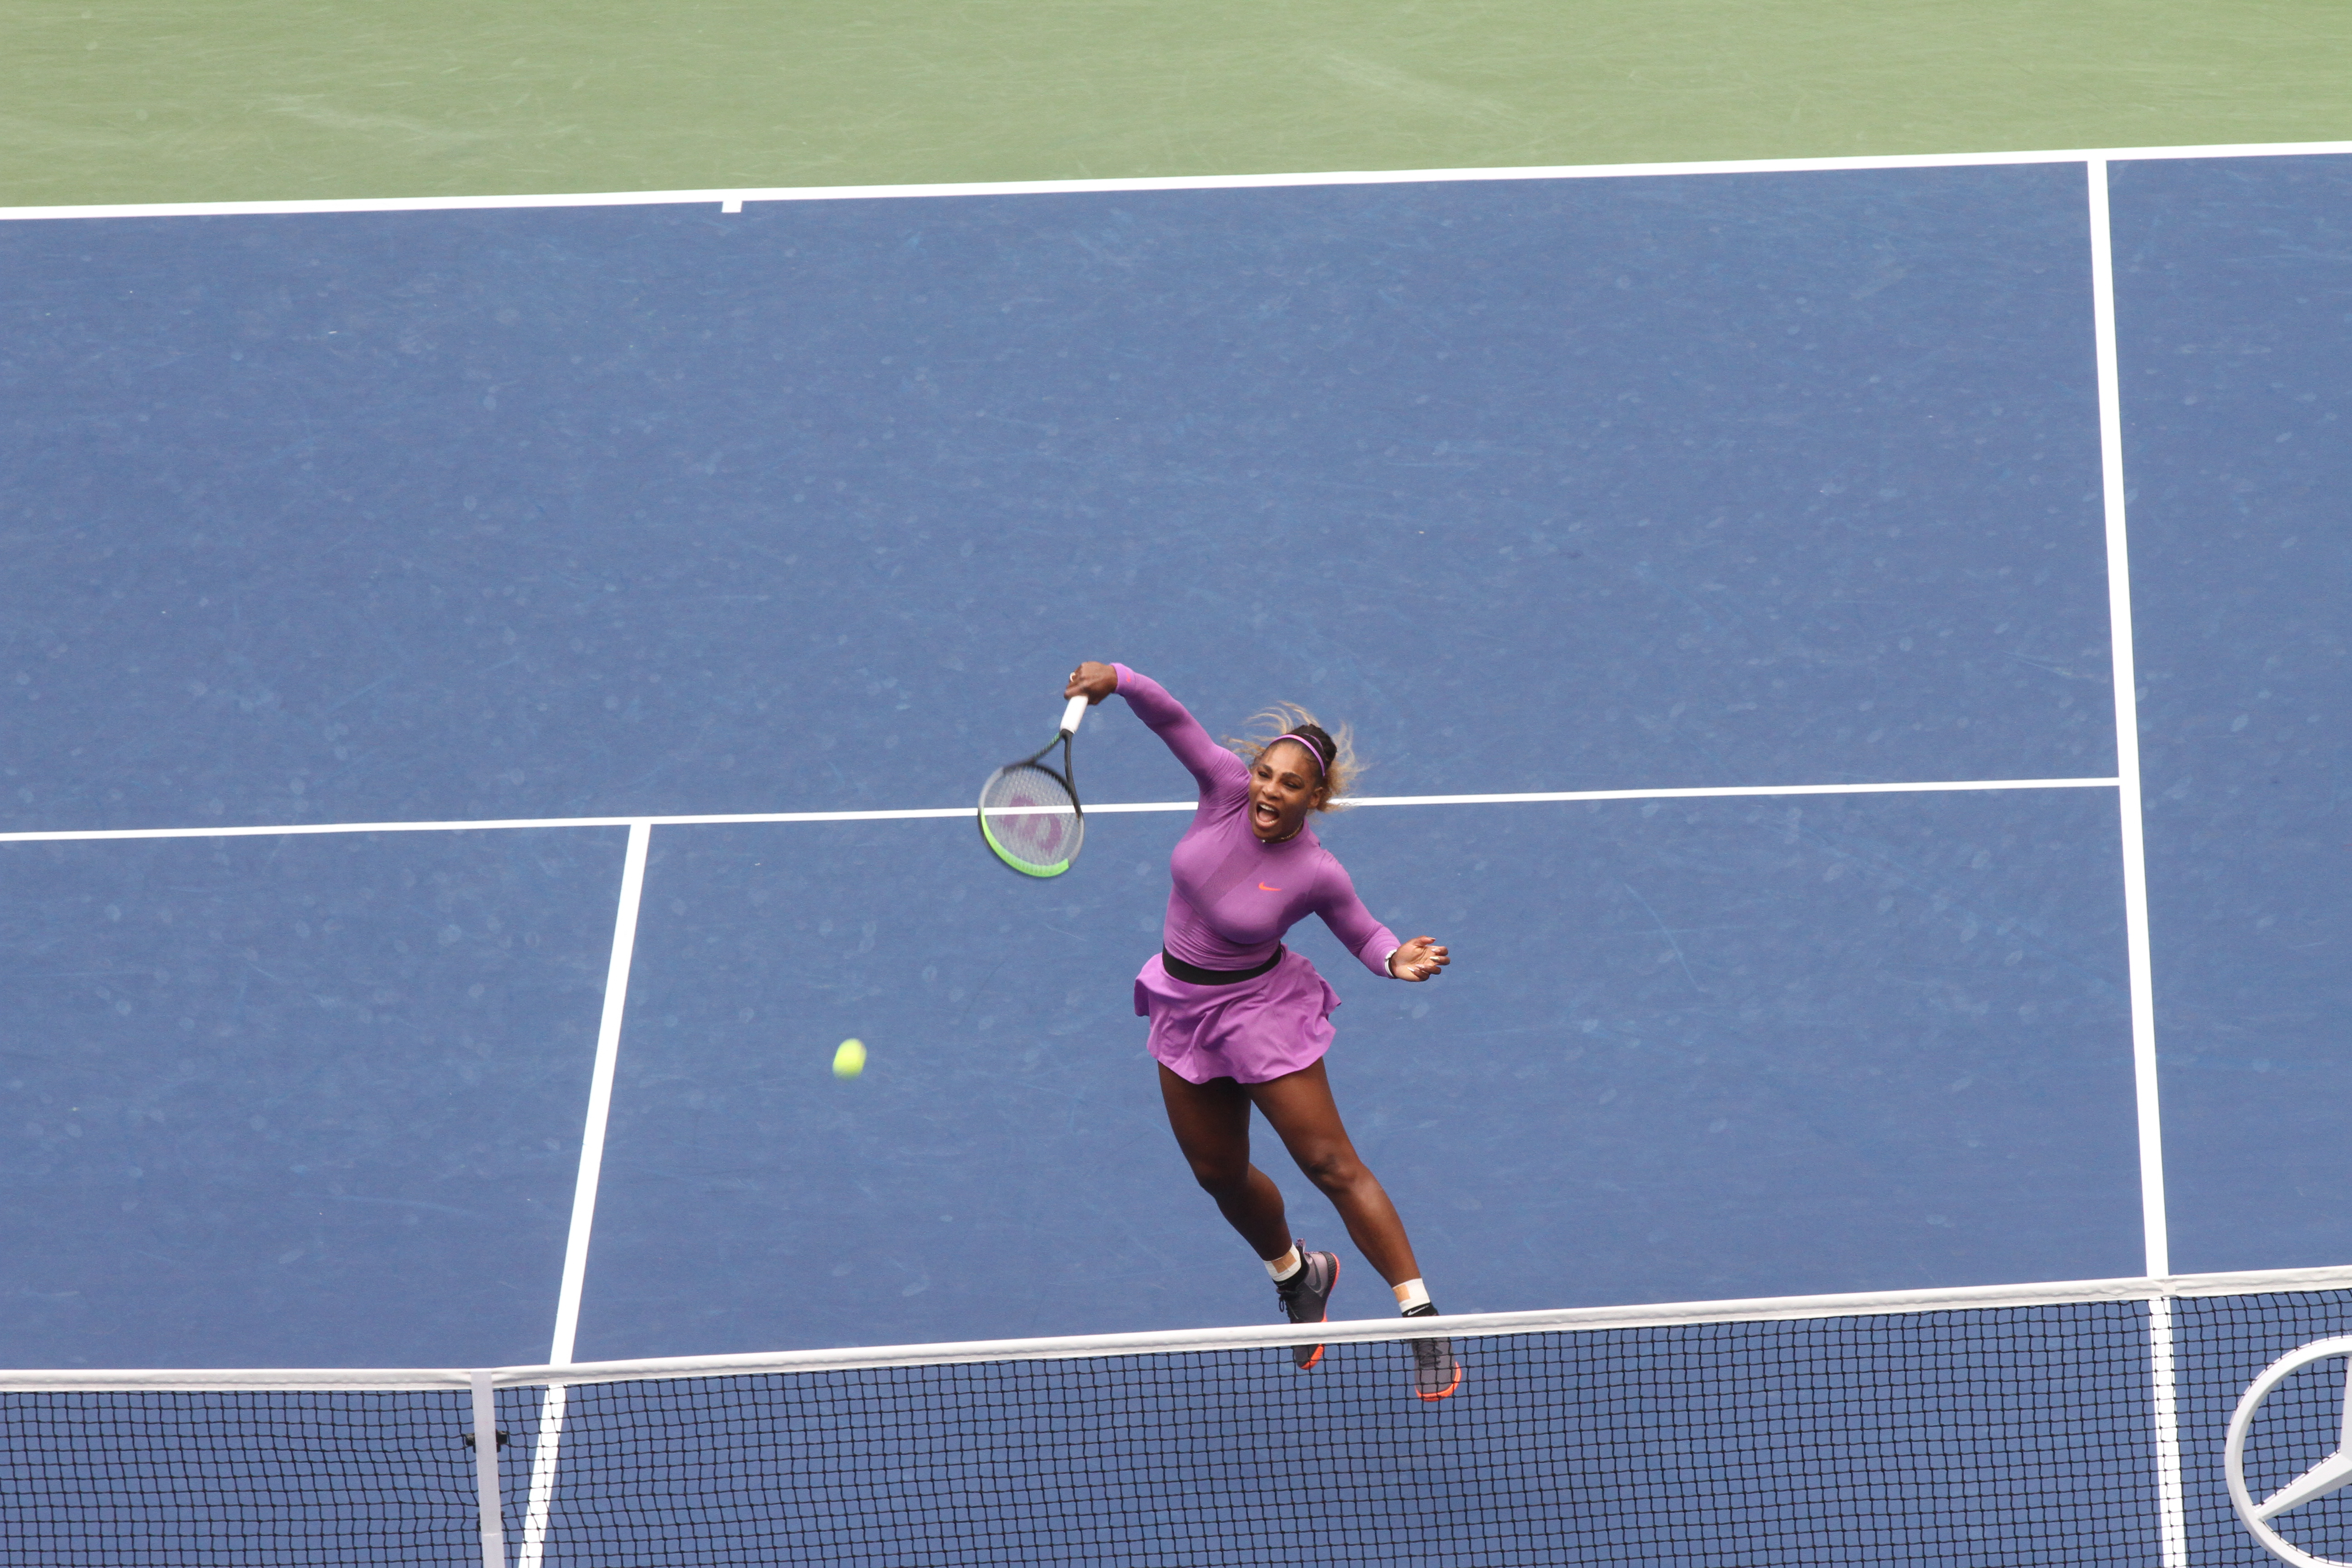 Un smash de Serena Williams en la red. / Foto: Mariela Lombard, El Diario NY